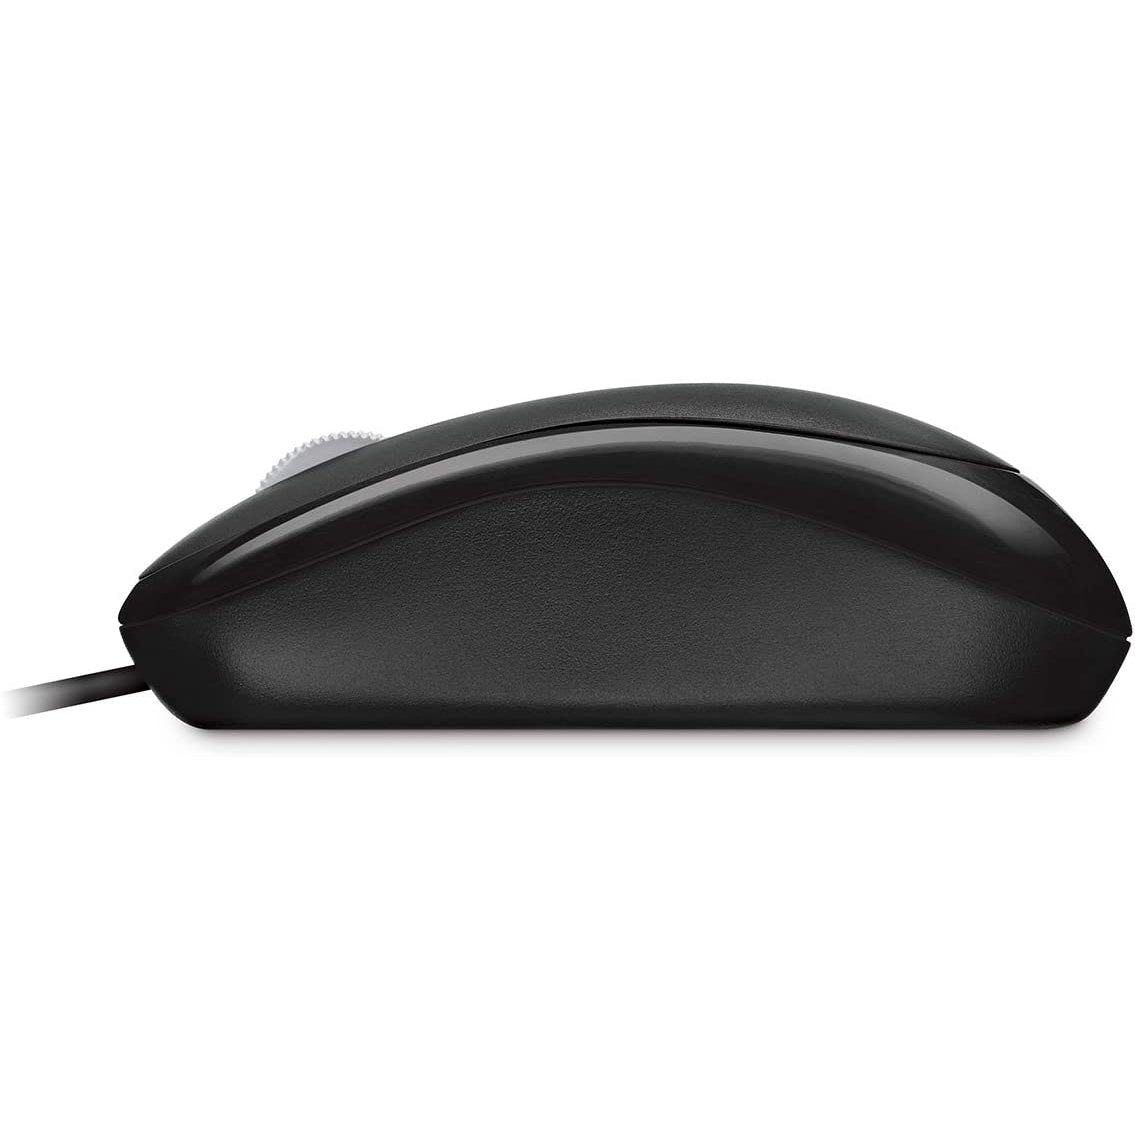 Microsoft Basic Optical Mouse - Black